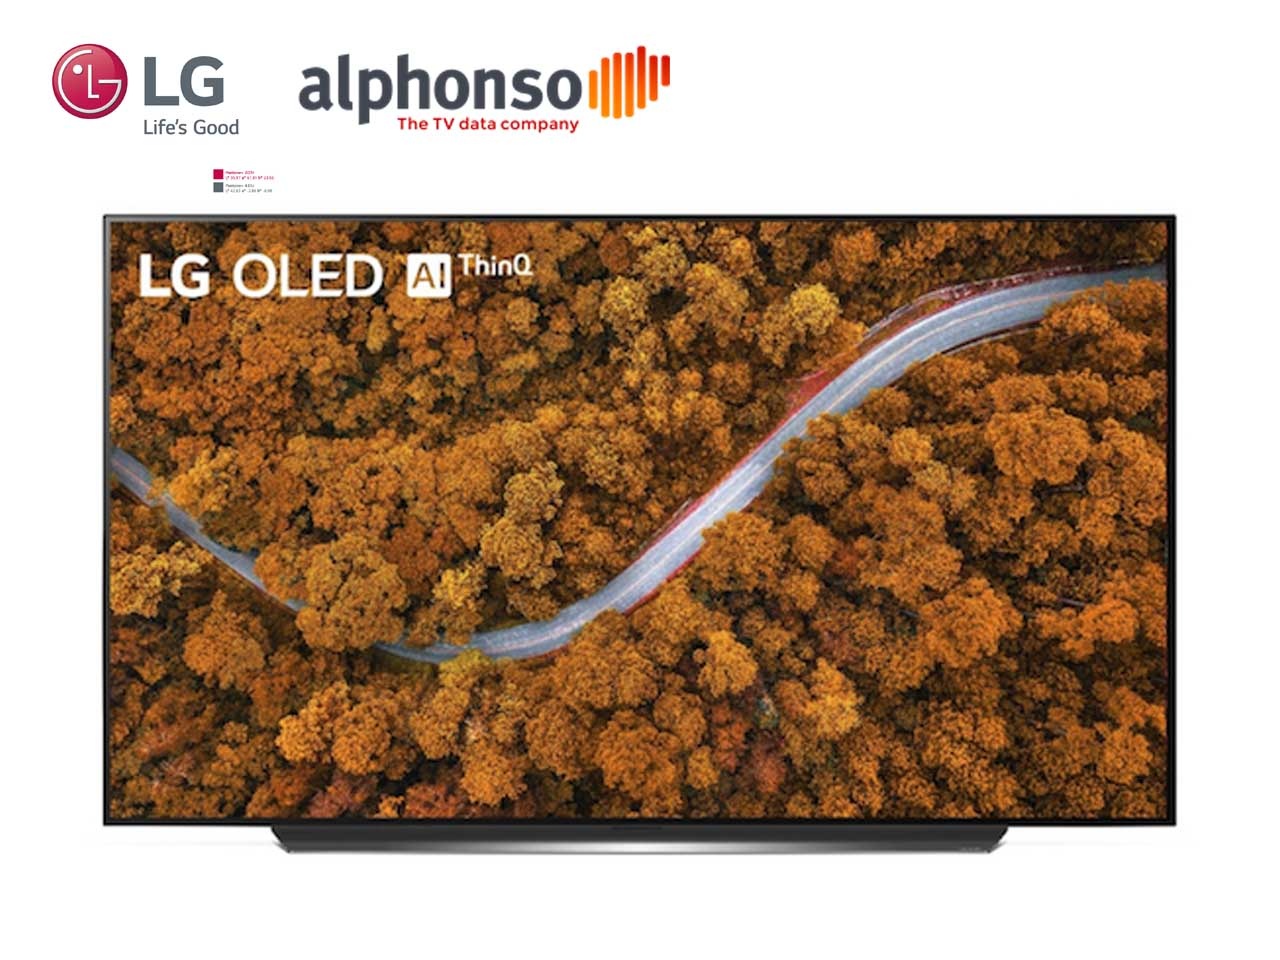 LG devient l’actionnaire majoritaire d’Alphonso, société de mesures et de données télévisuelles